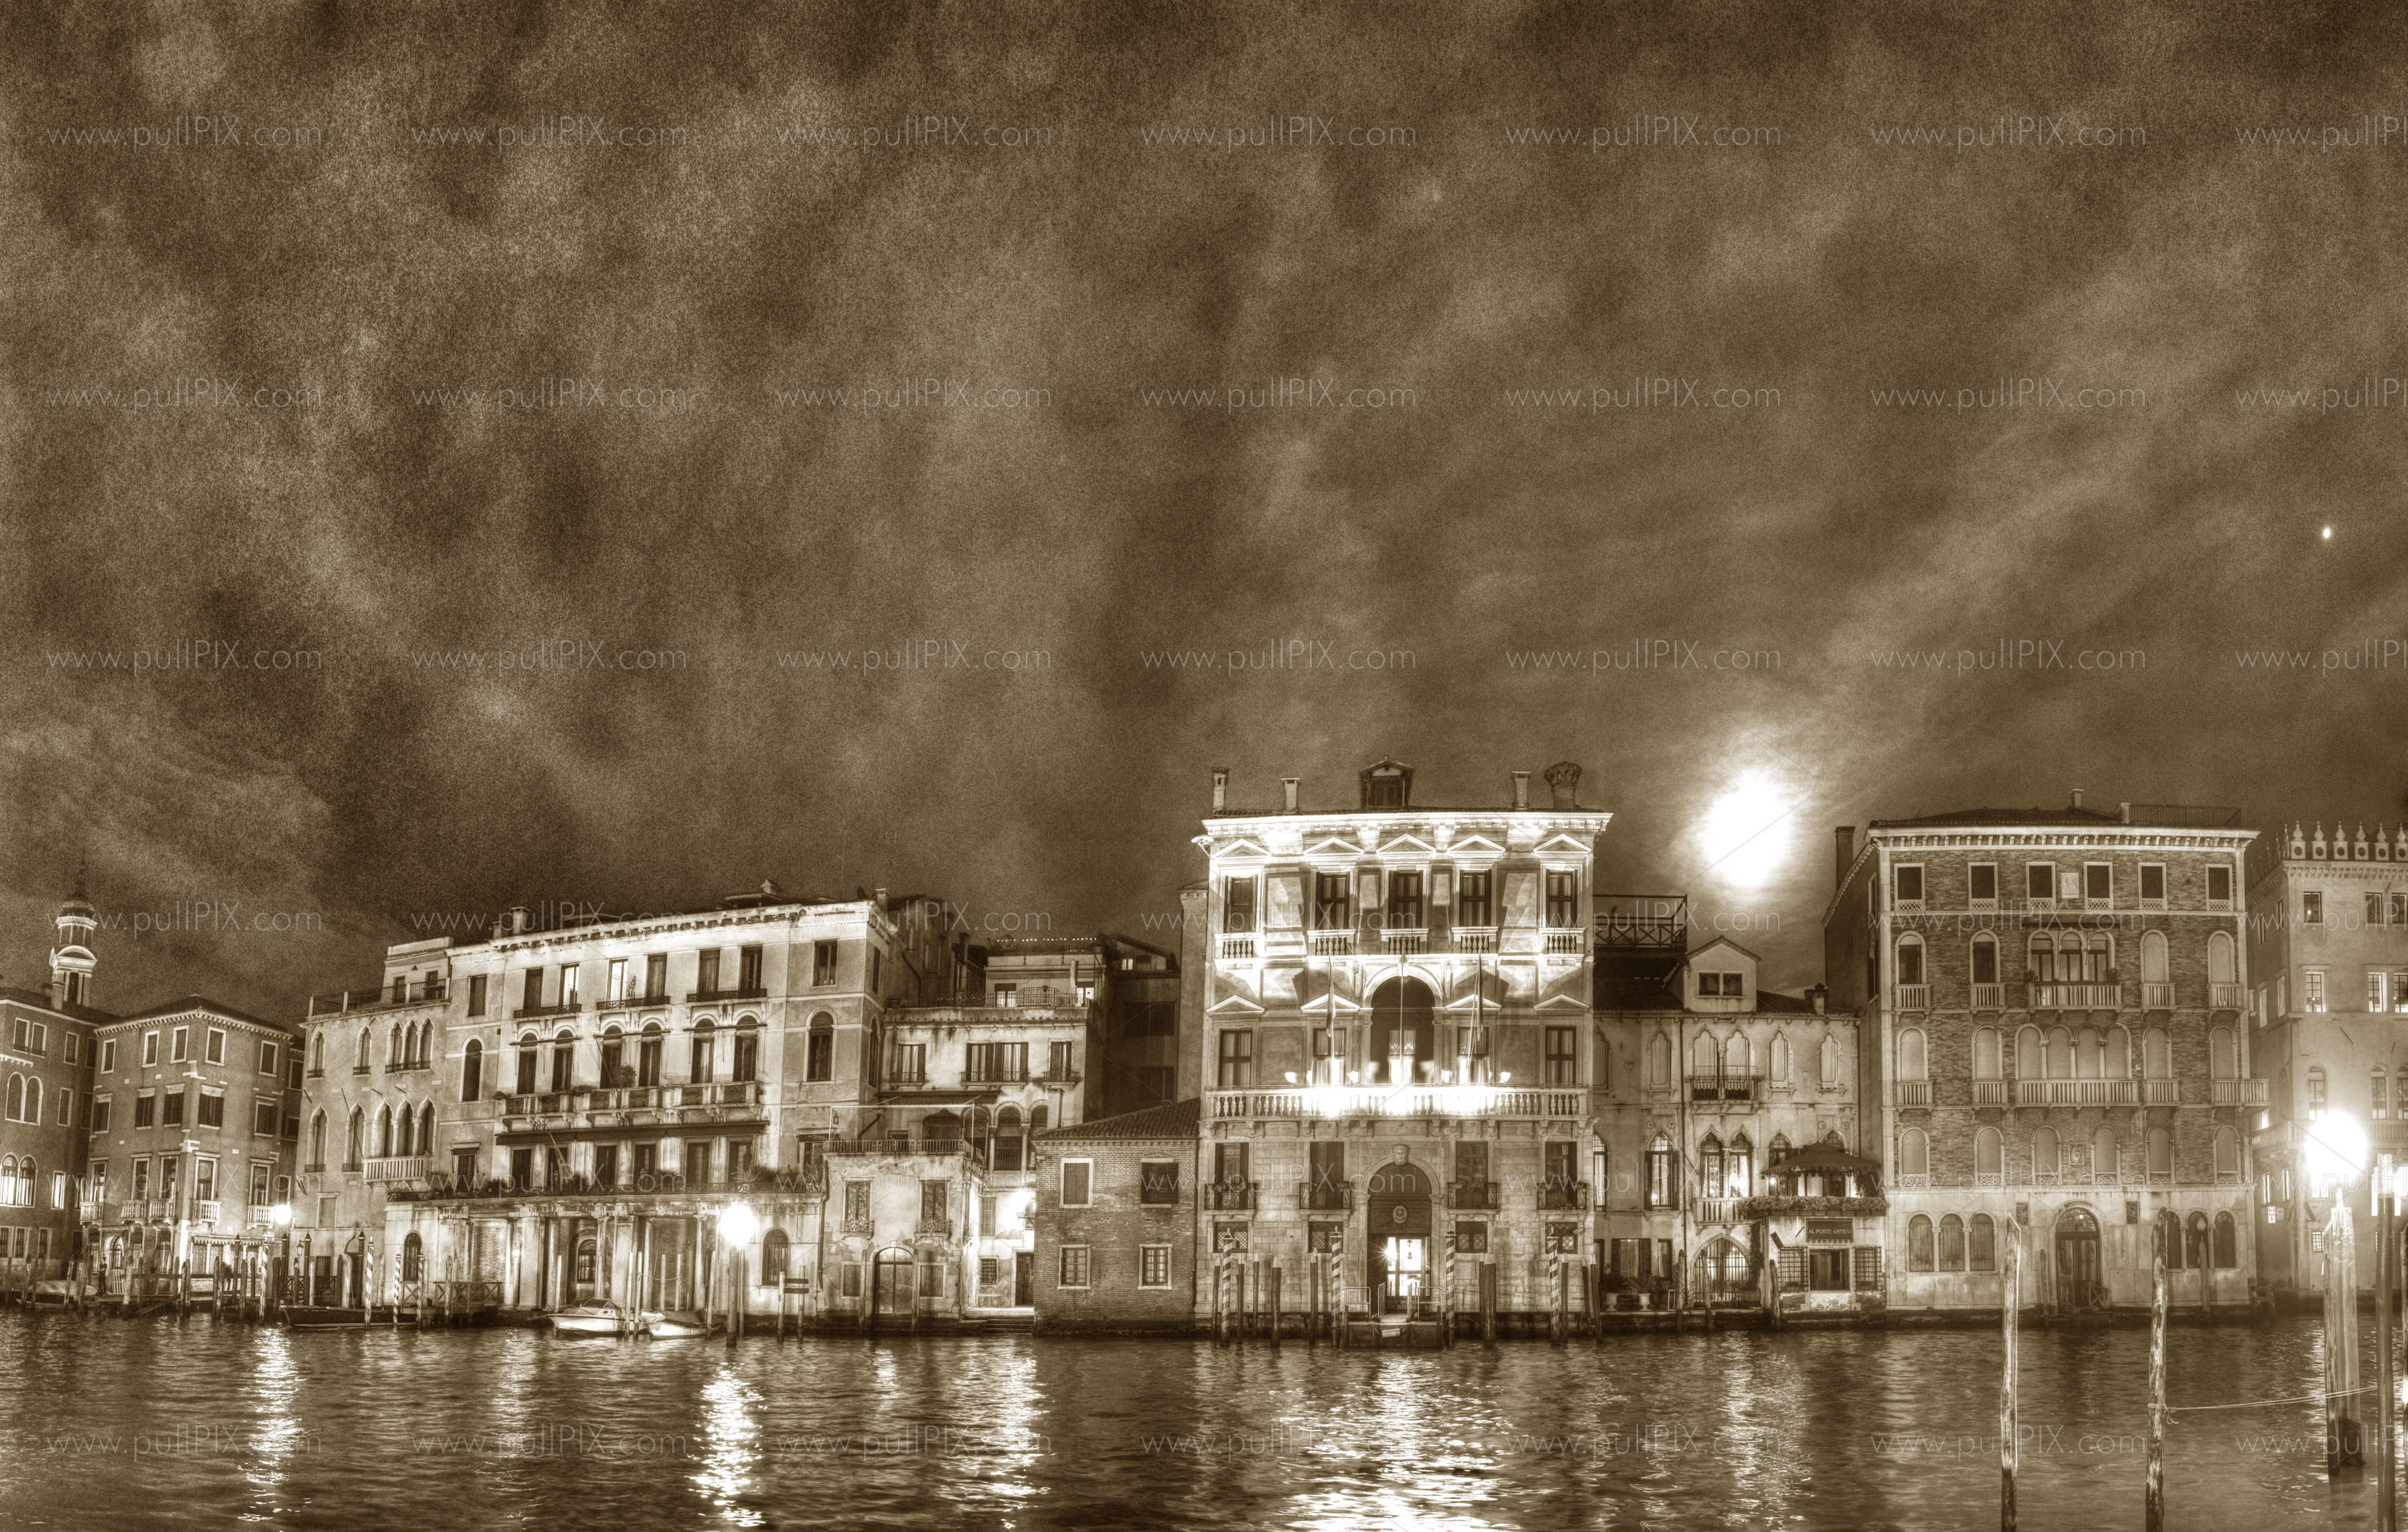 Preview venezia bei nacht SW.jpg